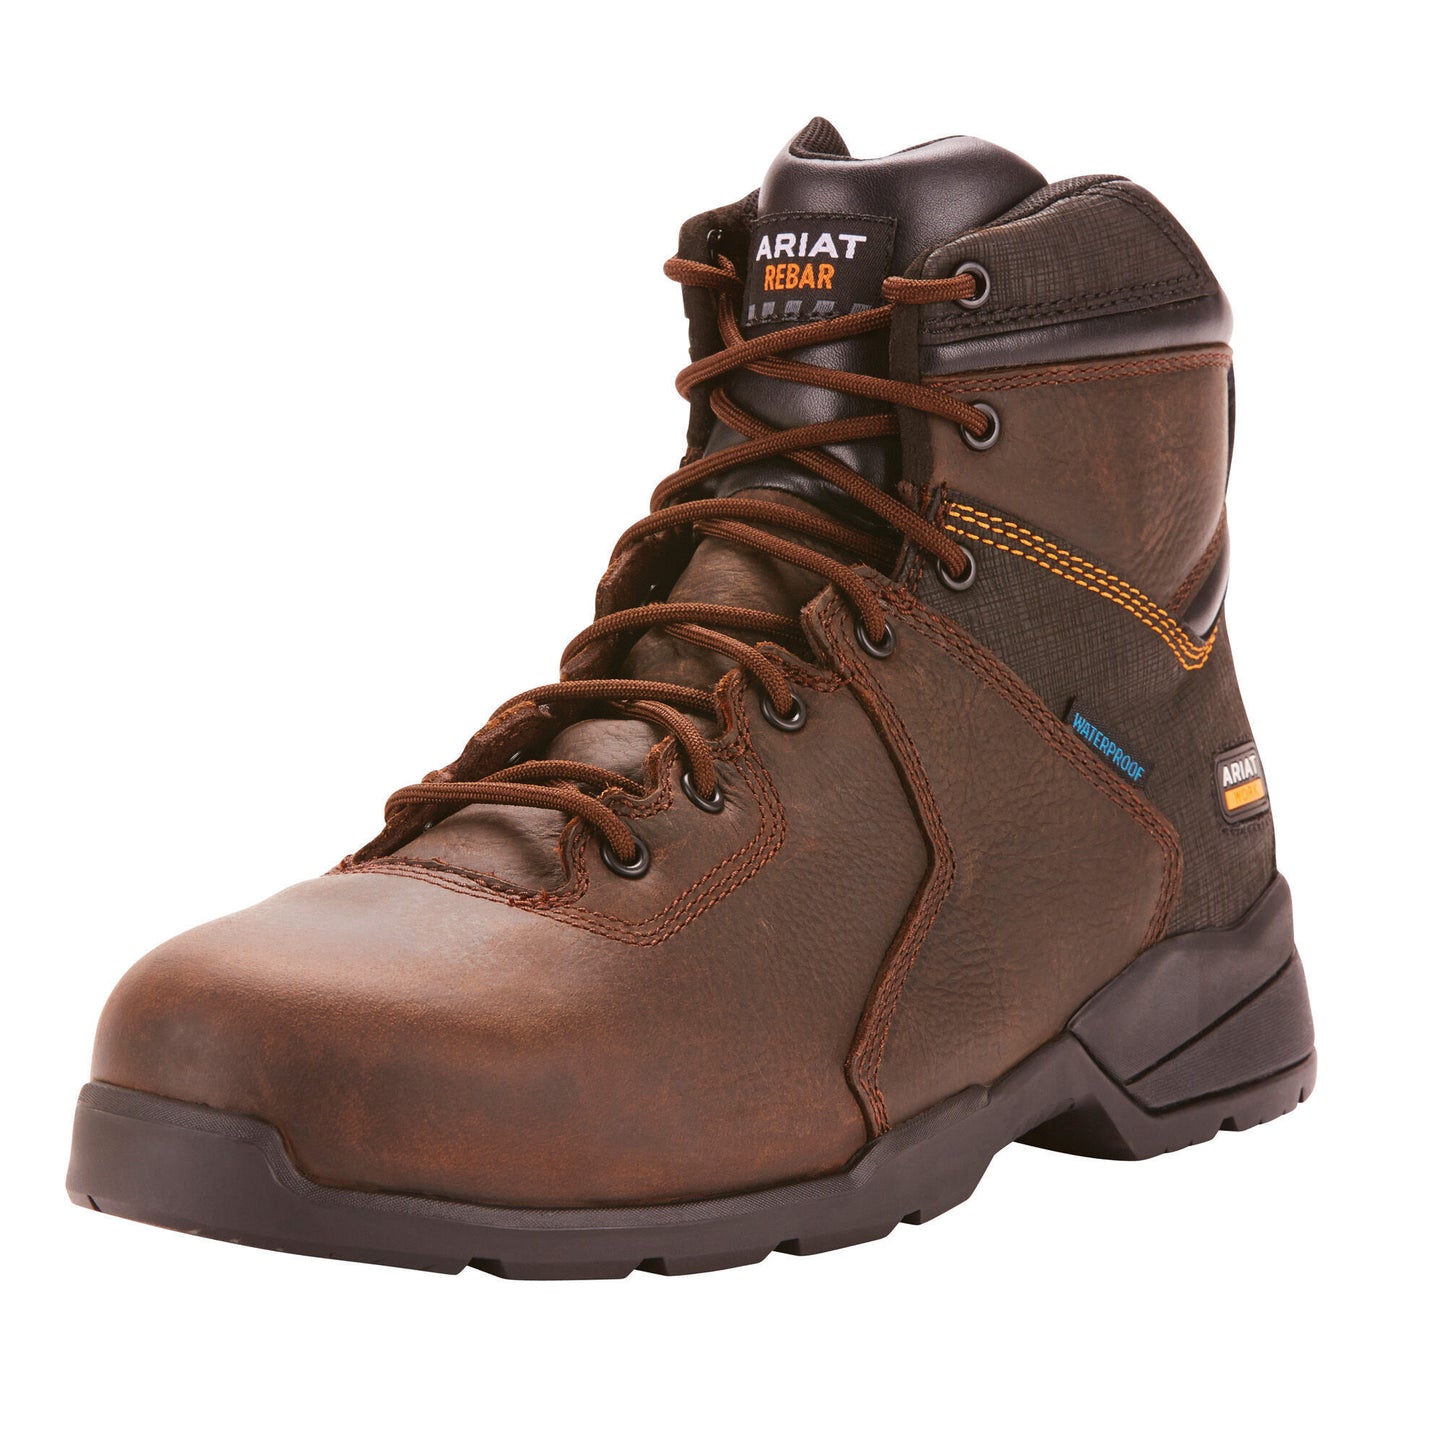 Ariat Men's Rebar Flex Protect 6" Waterproof Carbon Toe Work Boot - Dark Brown